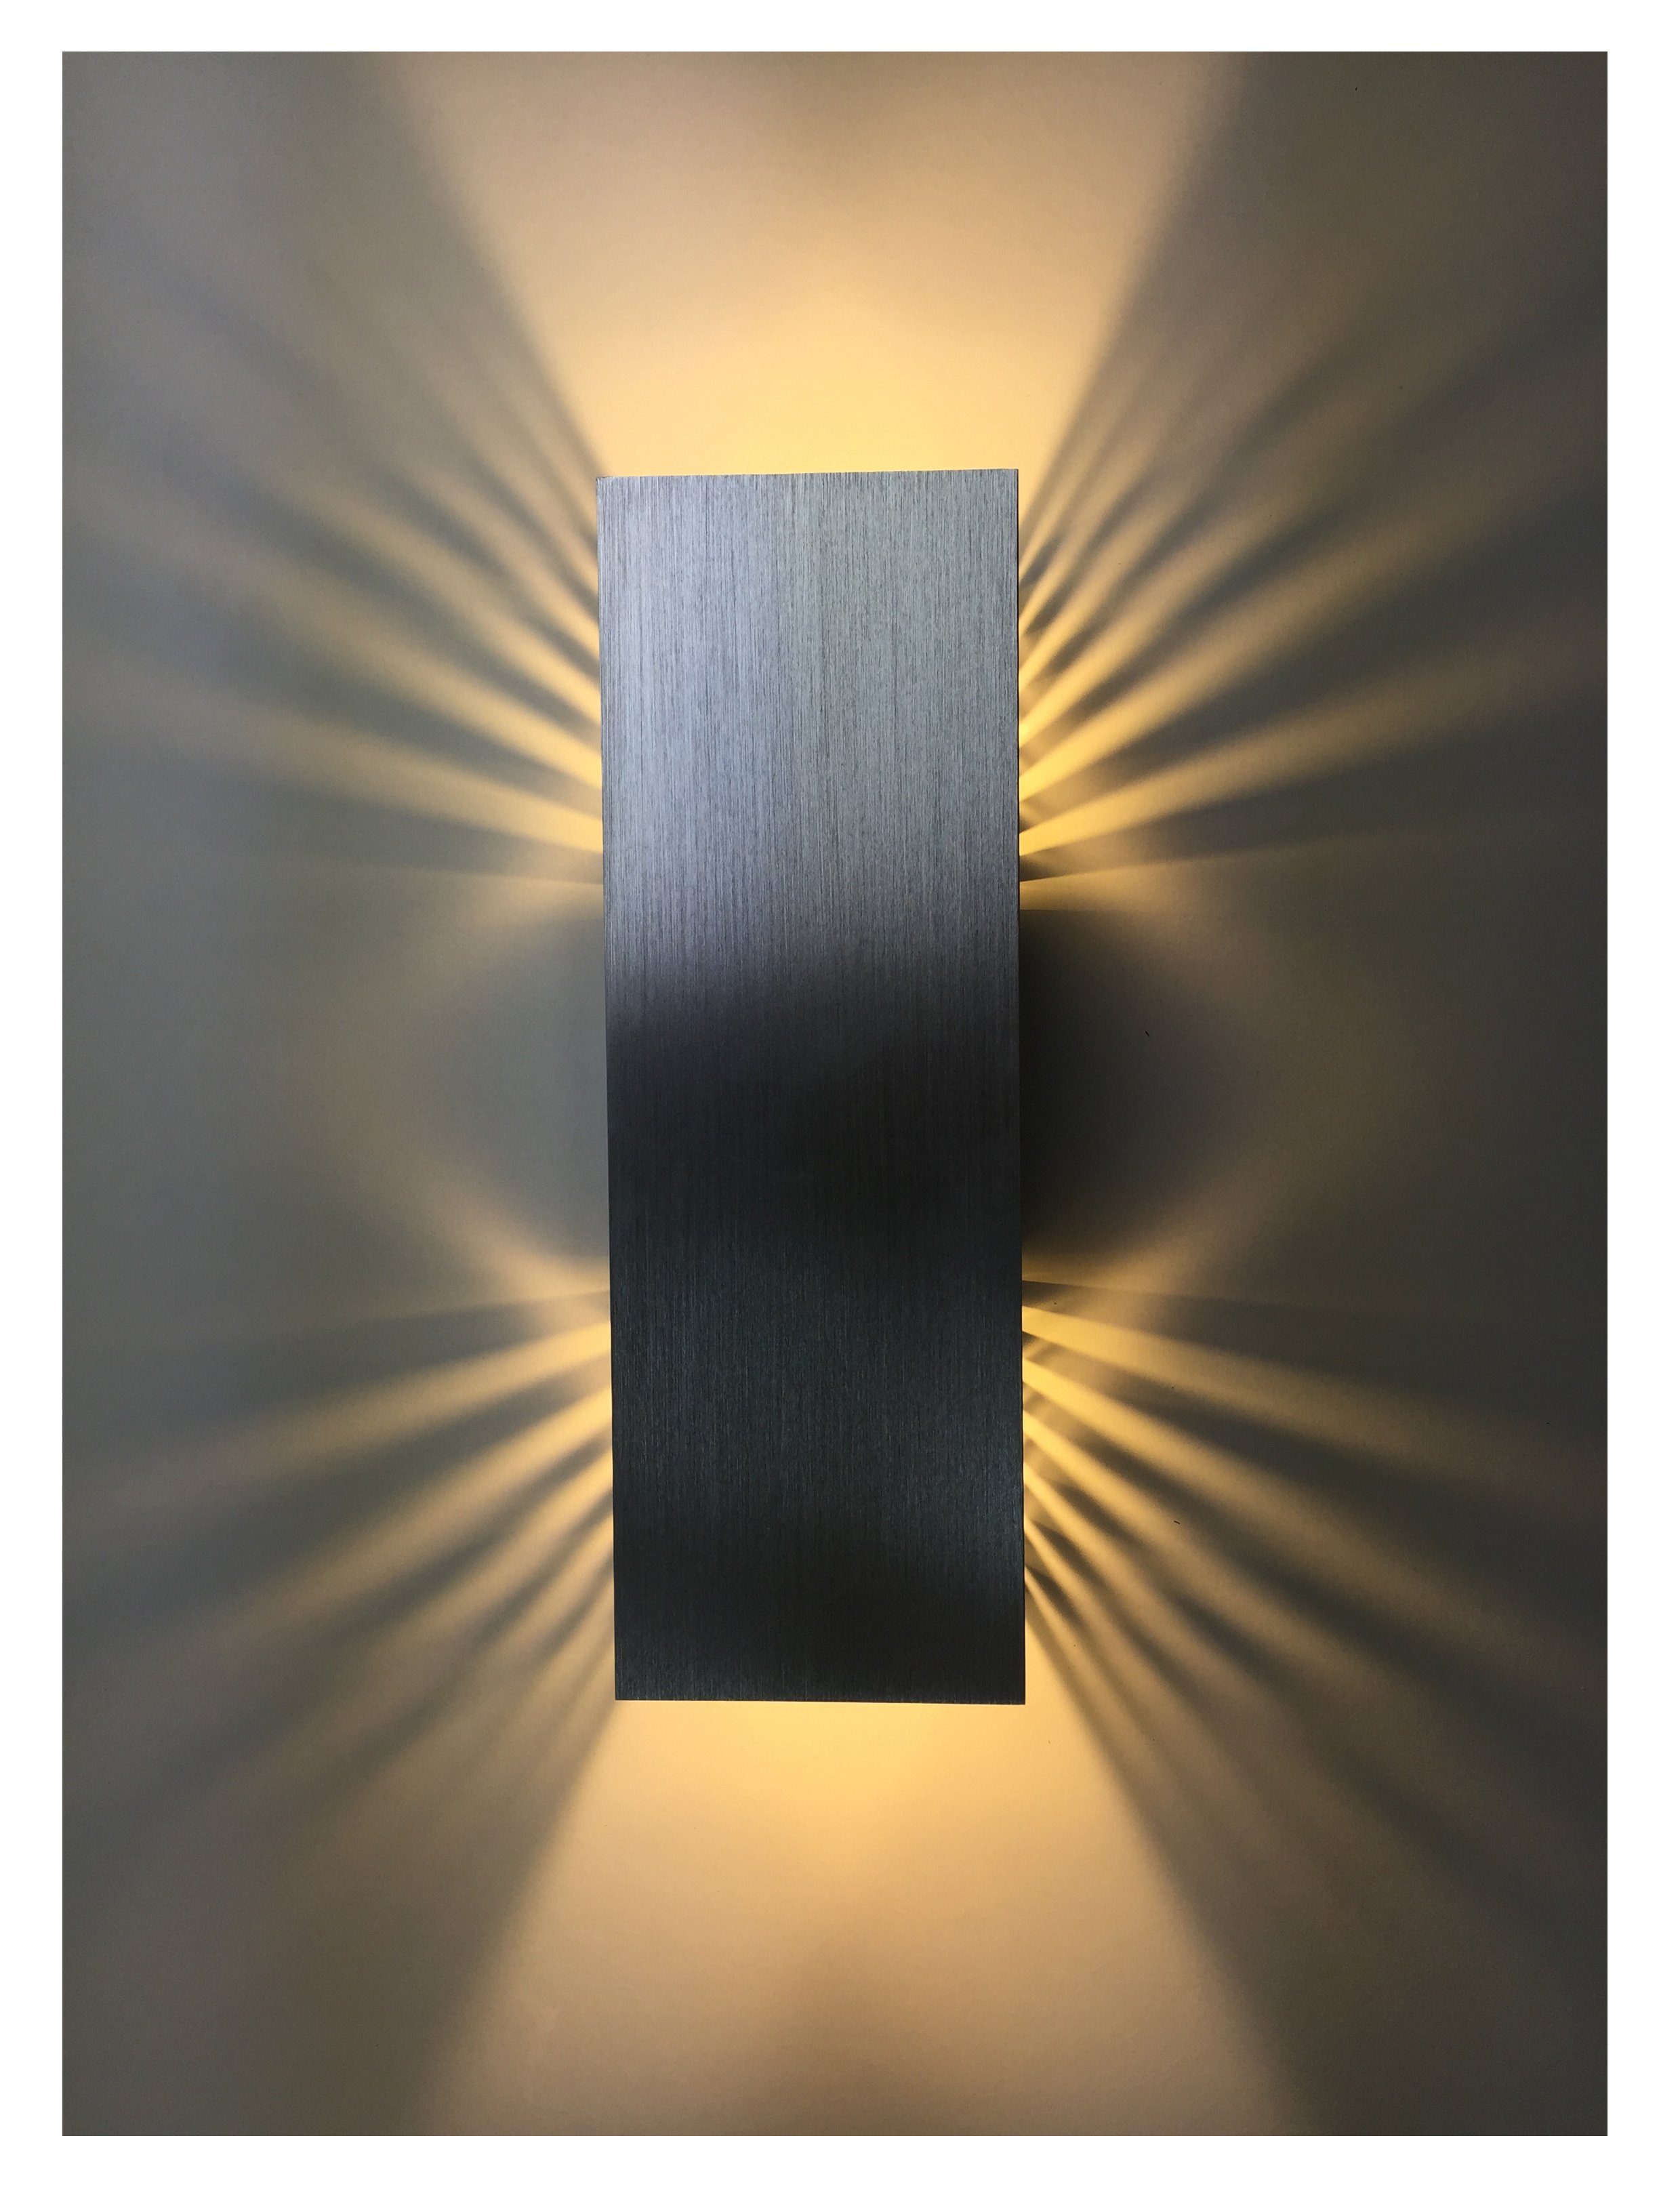 SpiceLED LED Wandleuchte ShineLED, Warmweiß (2700 K), LED fest integriert, Warmweiß, 30 Watt, Lichtfarbe warmweiß, dimmbar, indirekte Beleuchtung mit Schatteneffekt, Up & Down Licht